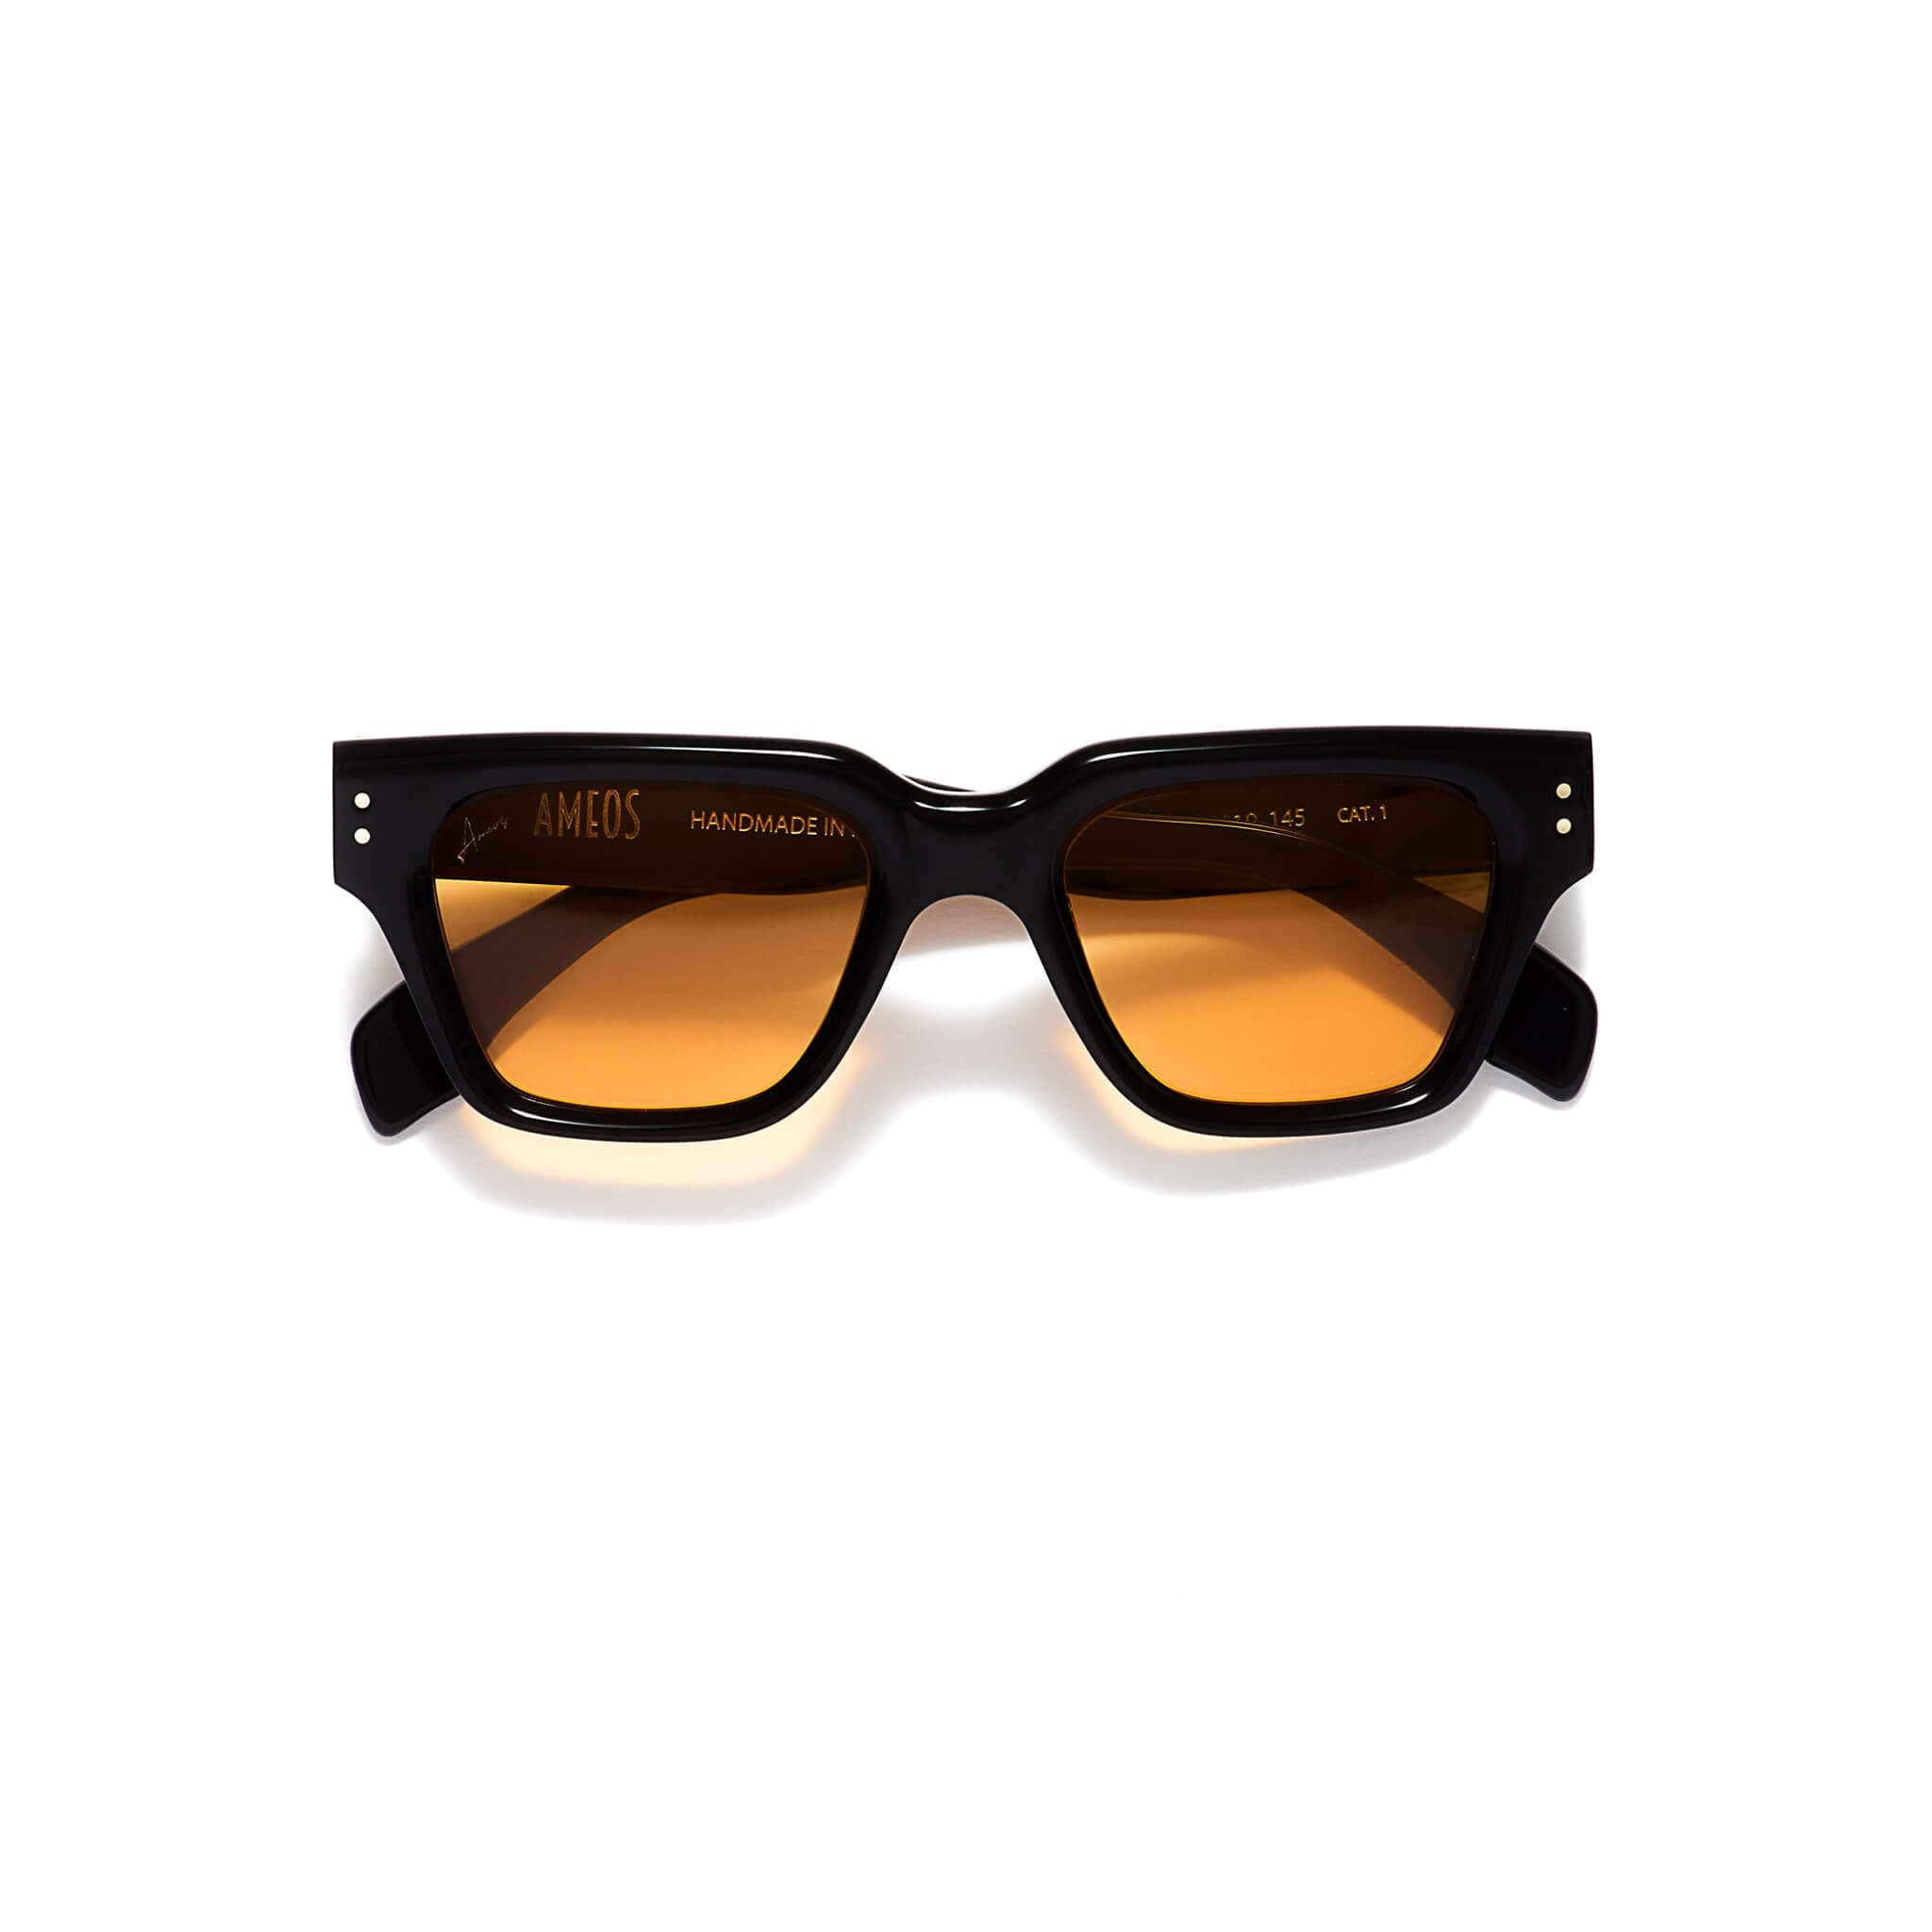 black frames sunglasses with orange lenses